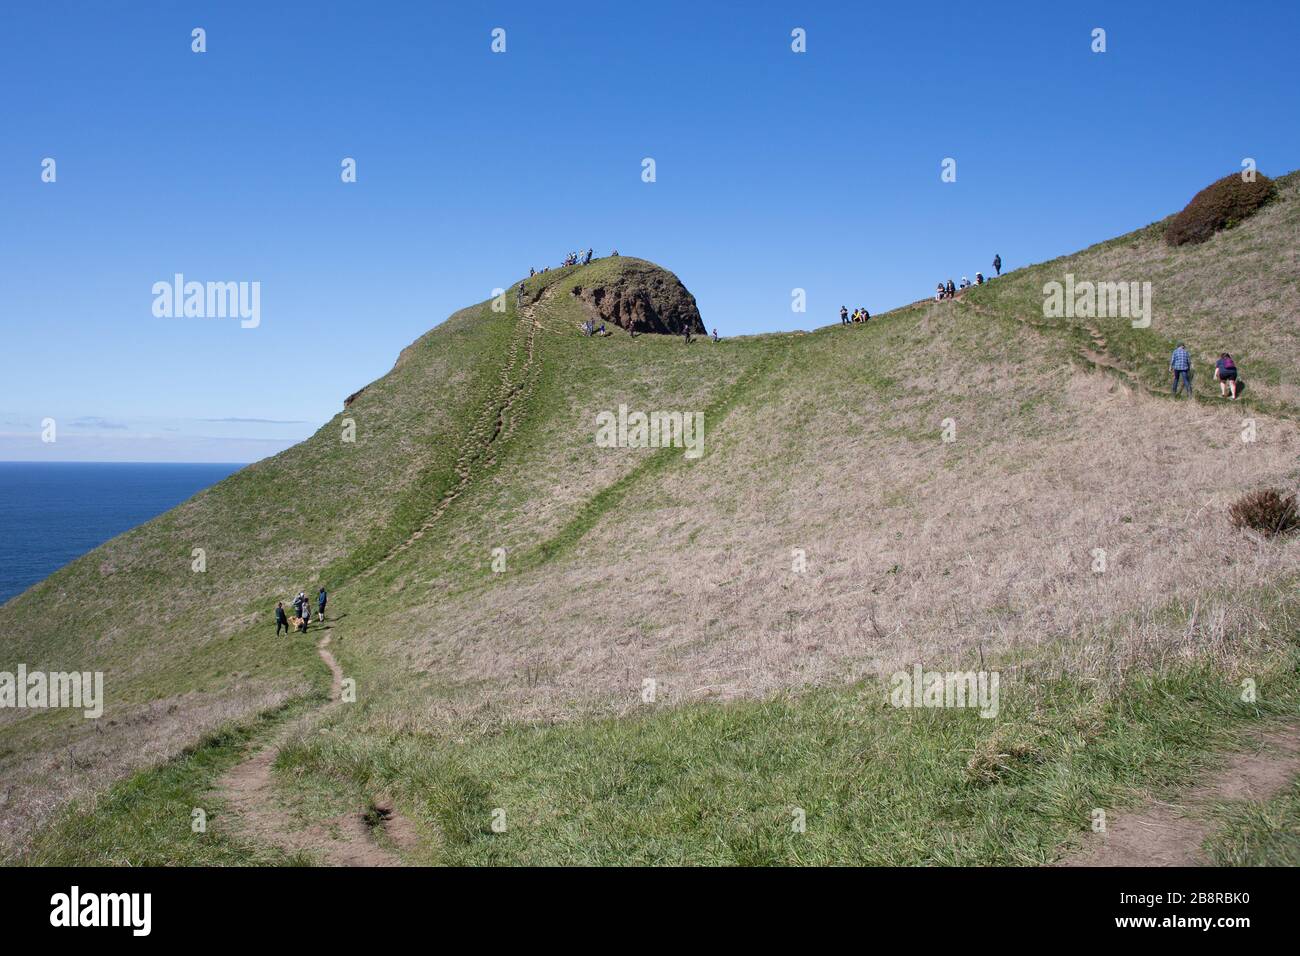 Les gens grimpent sur le sentier escarpé menant à God's Thumb, un bouchon volcanique qui est un lieu de randonnée populaire à Lincoln City, Oregon, États-Unis. Banque D'Images